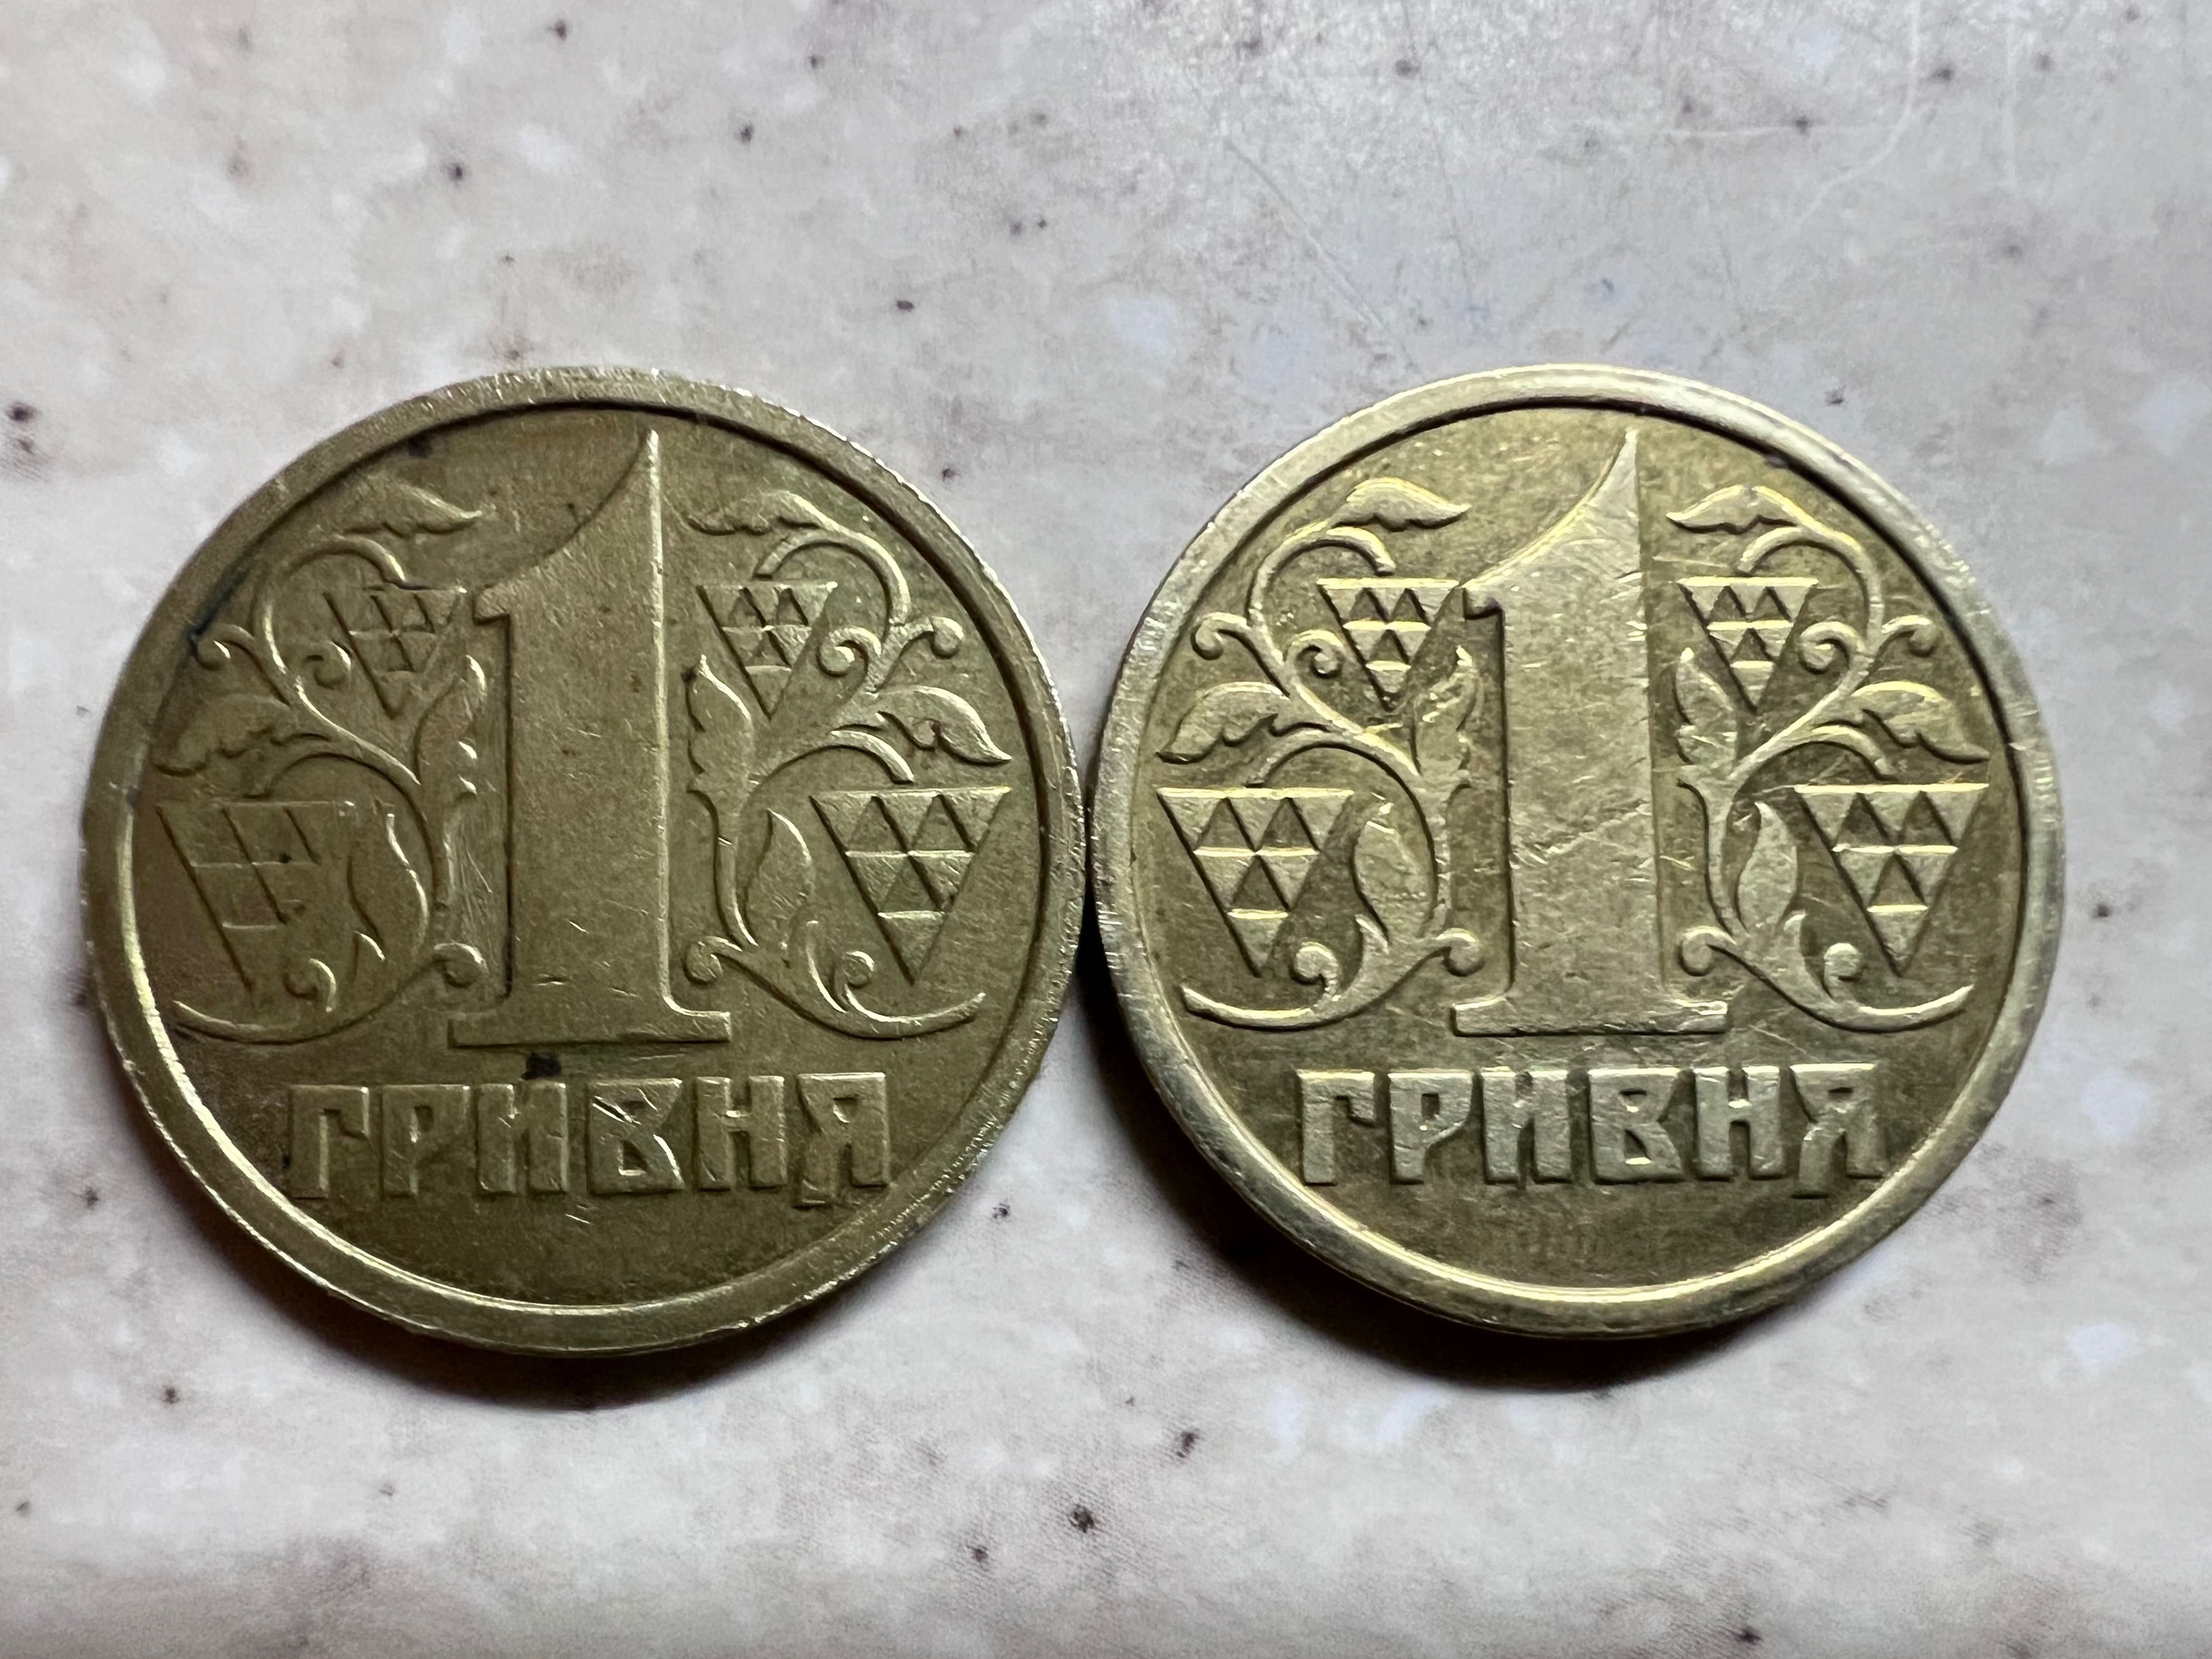 Монеты 1 гривна 1996 года выпуска